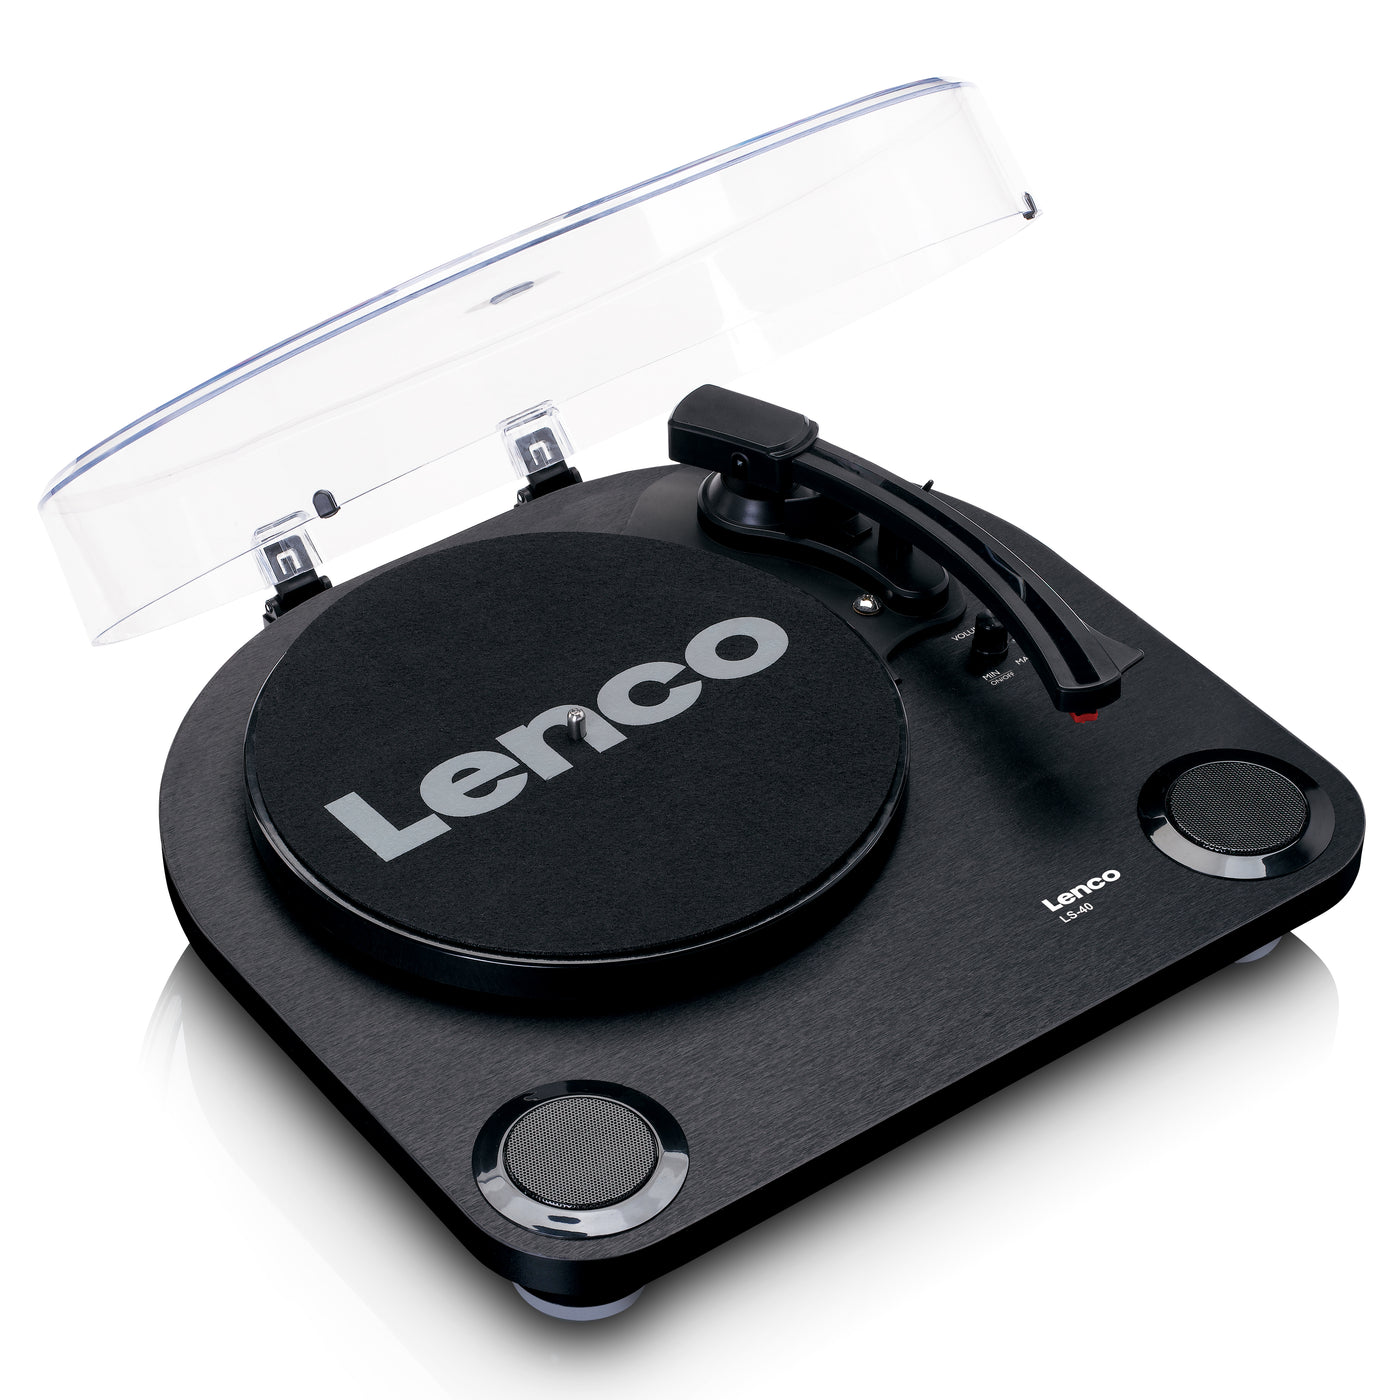 Lenco LS-40BK - Plattenspieler mit integrierten Lautsprechern - Schwarz